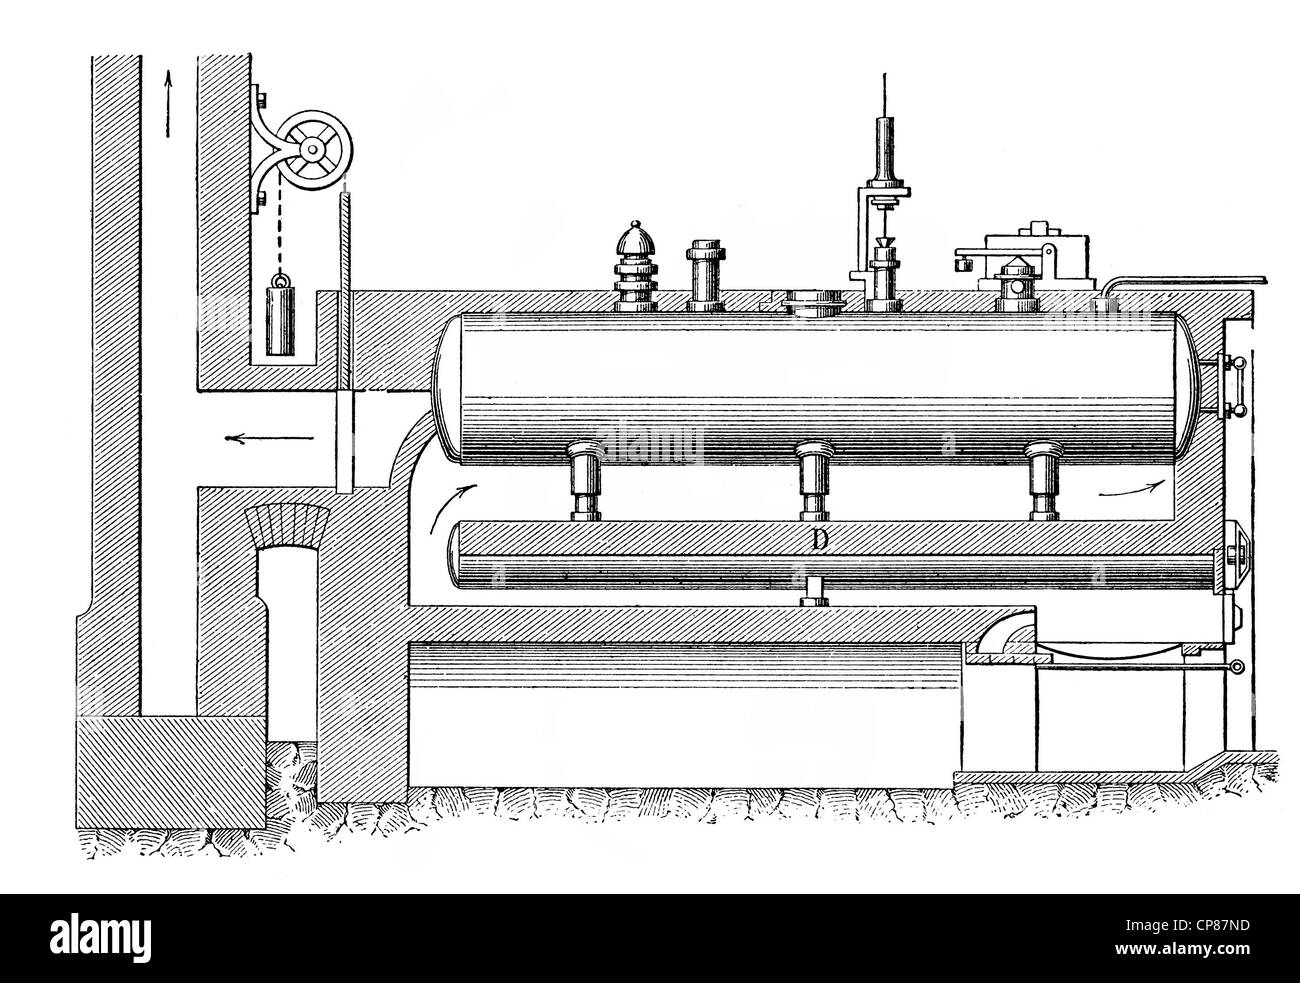 double ebullition boiler, boiler to generate steam, 19th Century, Historische, zeichnerische Darstellung, technische Zeichnung, Stock Photo